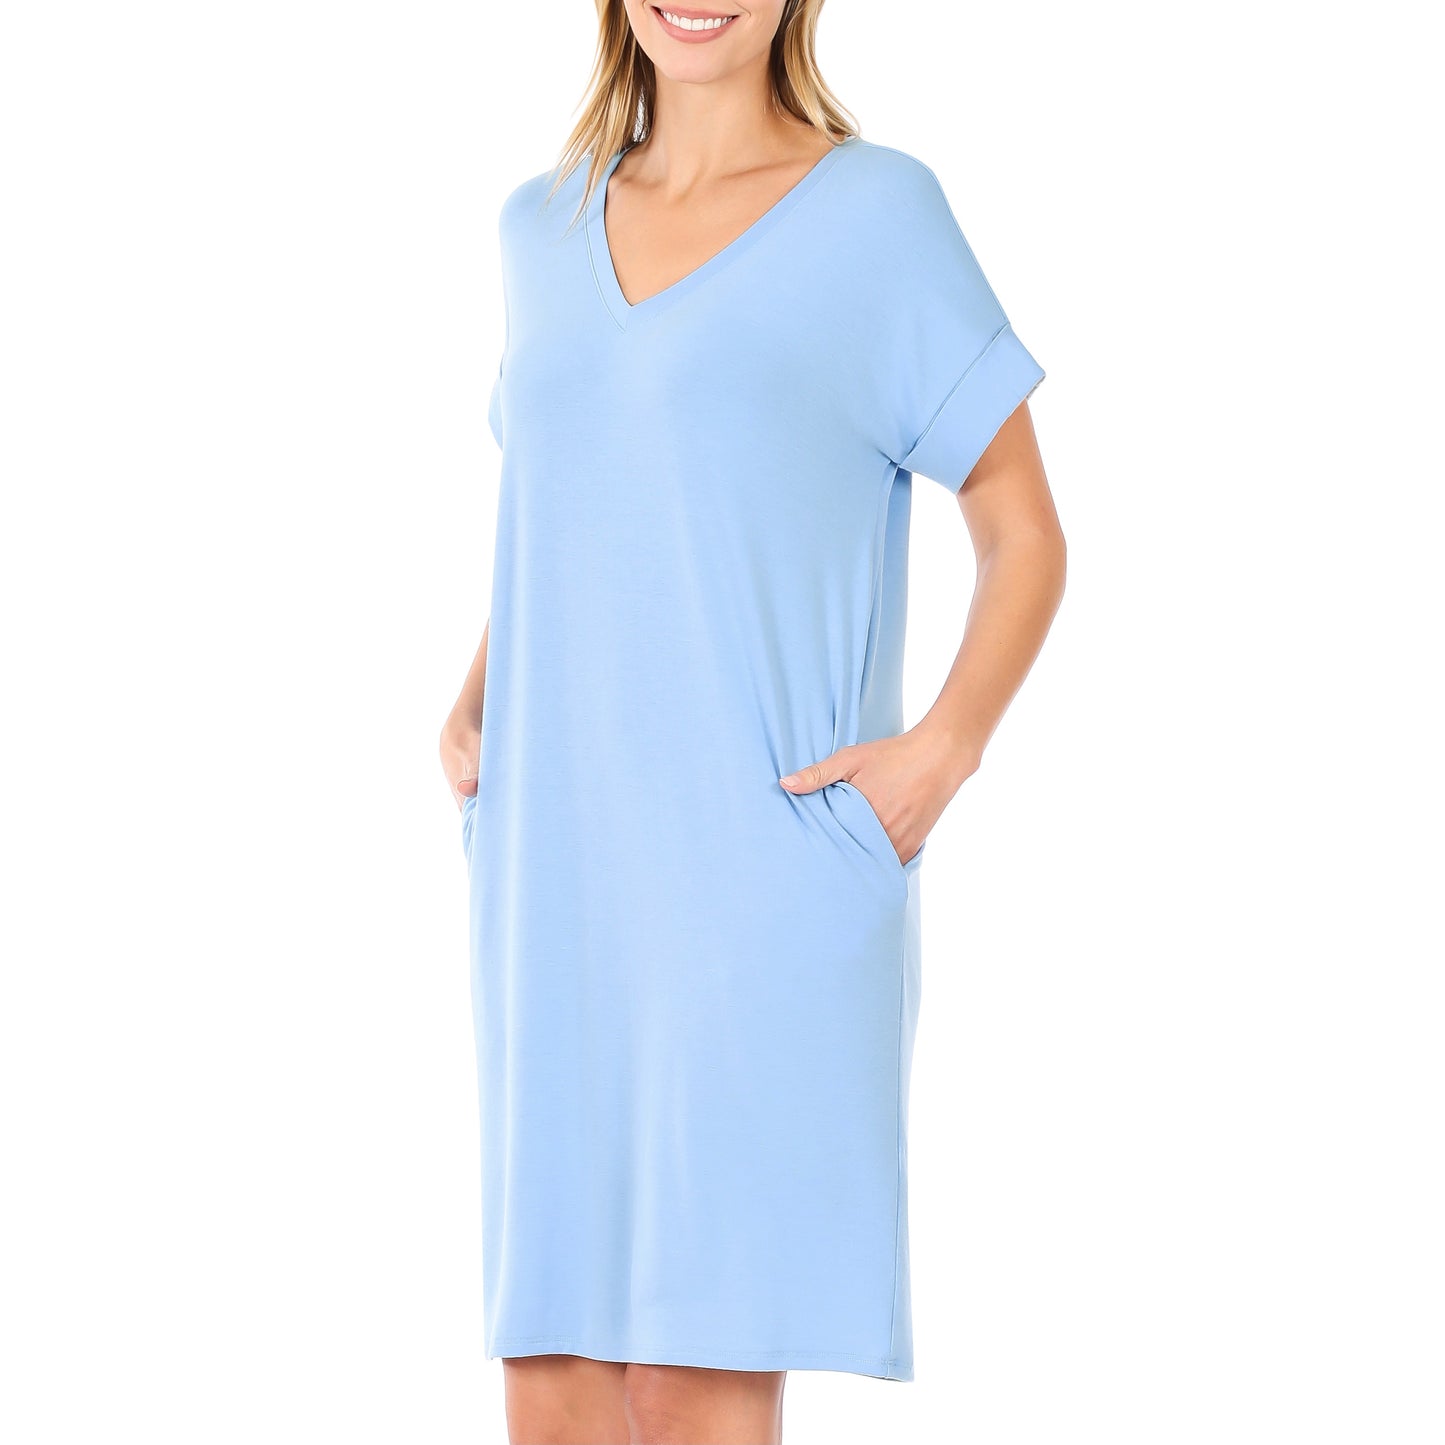 Rolled Short Sleeve V-Neck Dress with Side Pockets